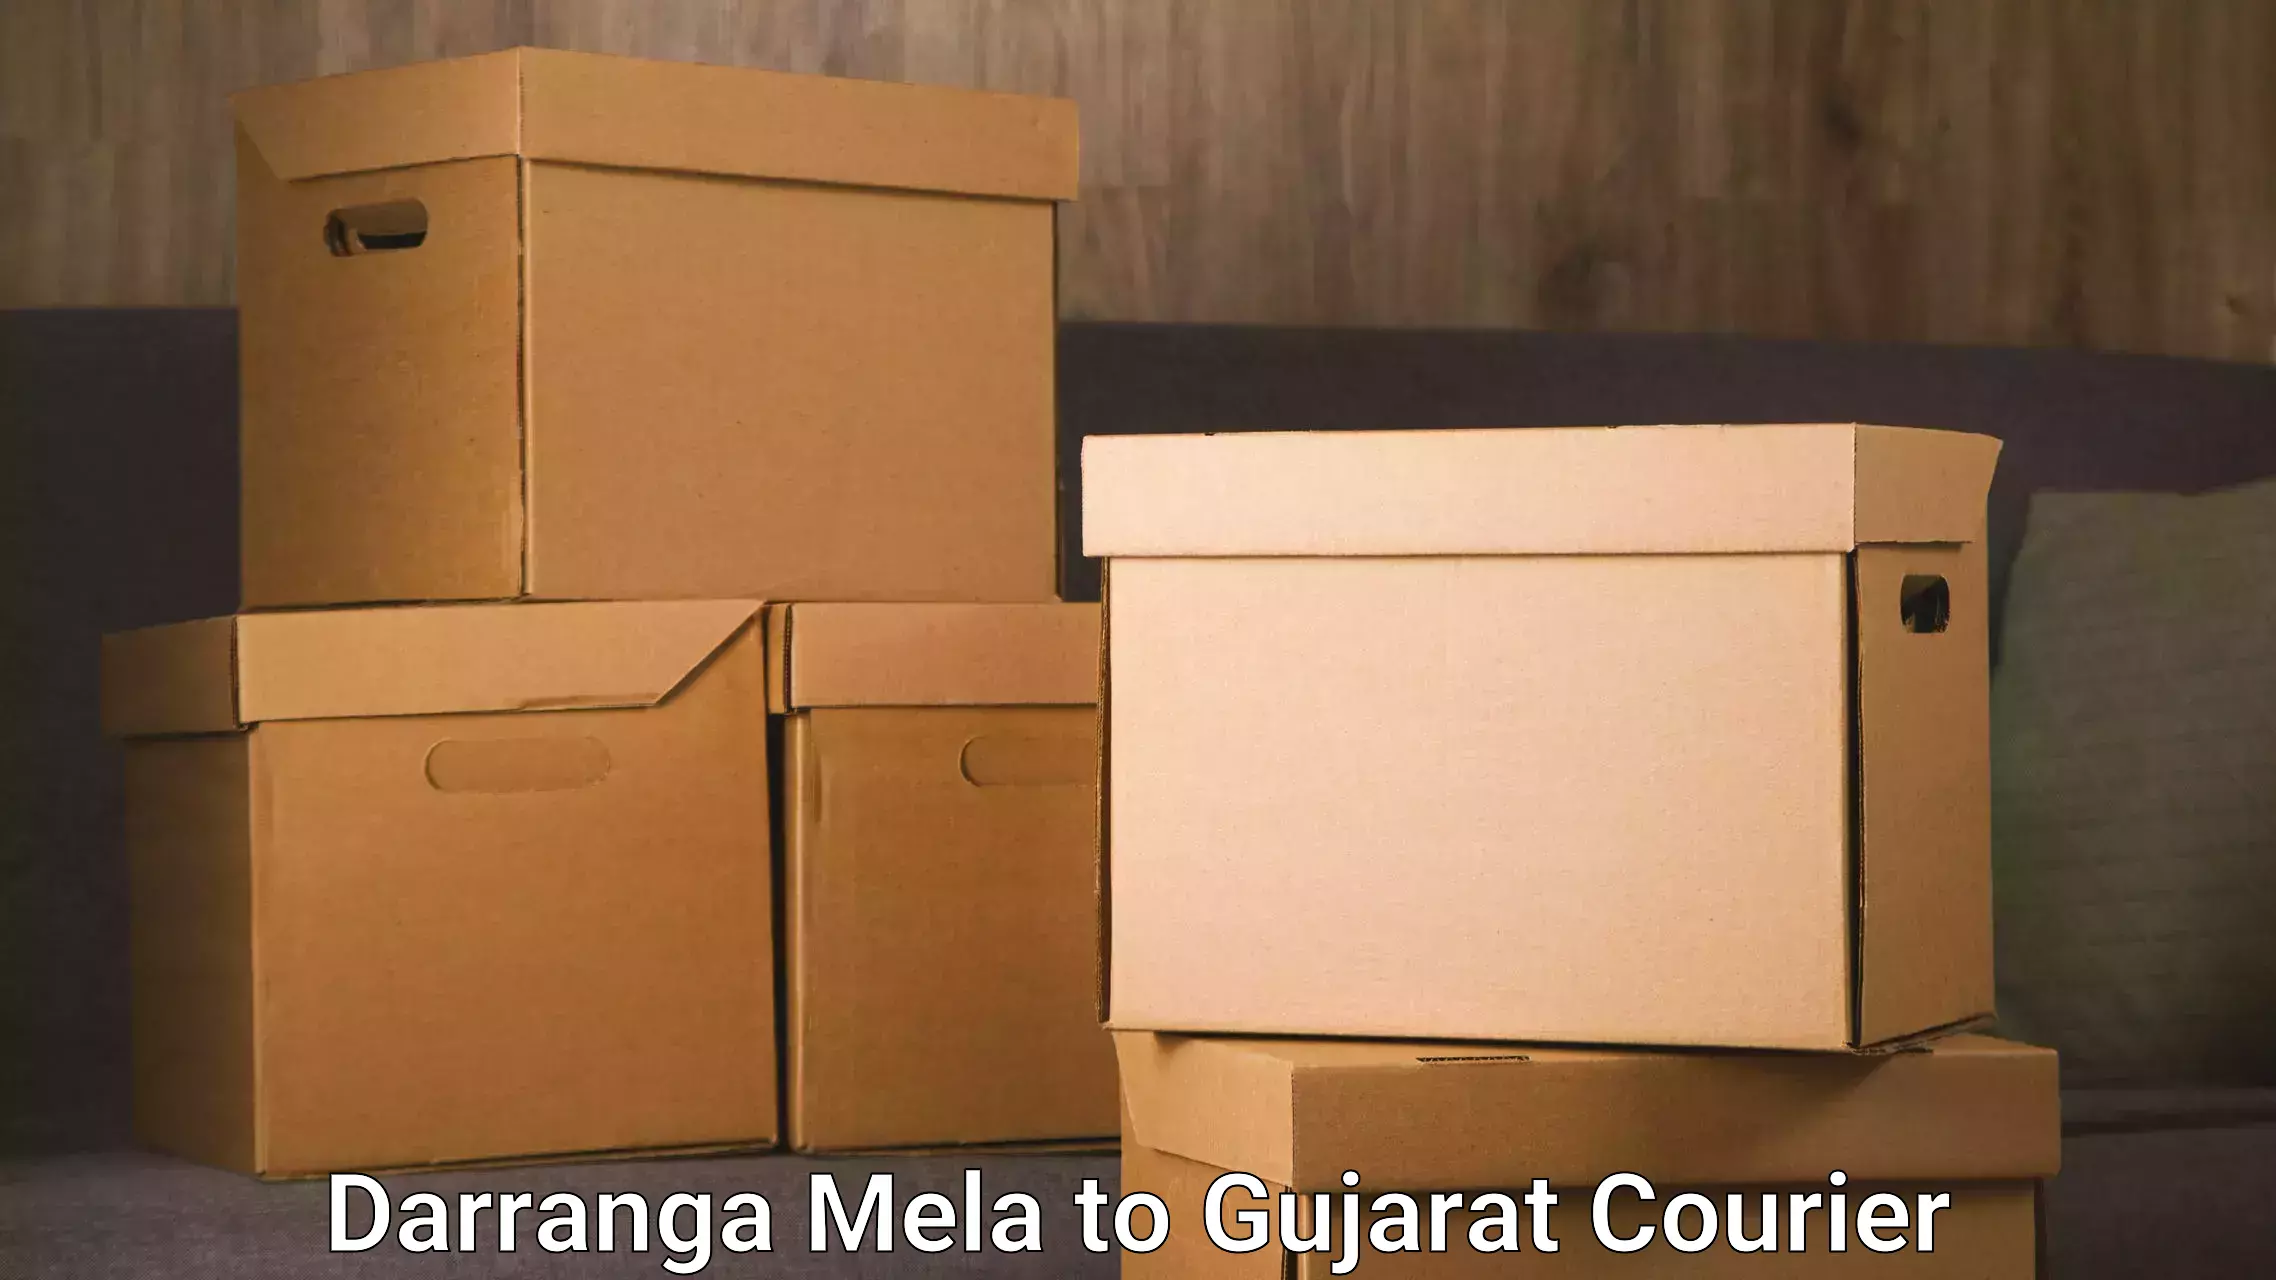 Efficient cargo services Darranga Mela to Junagadh